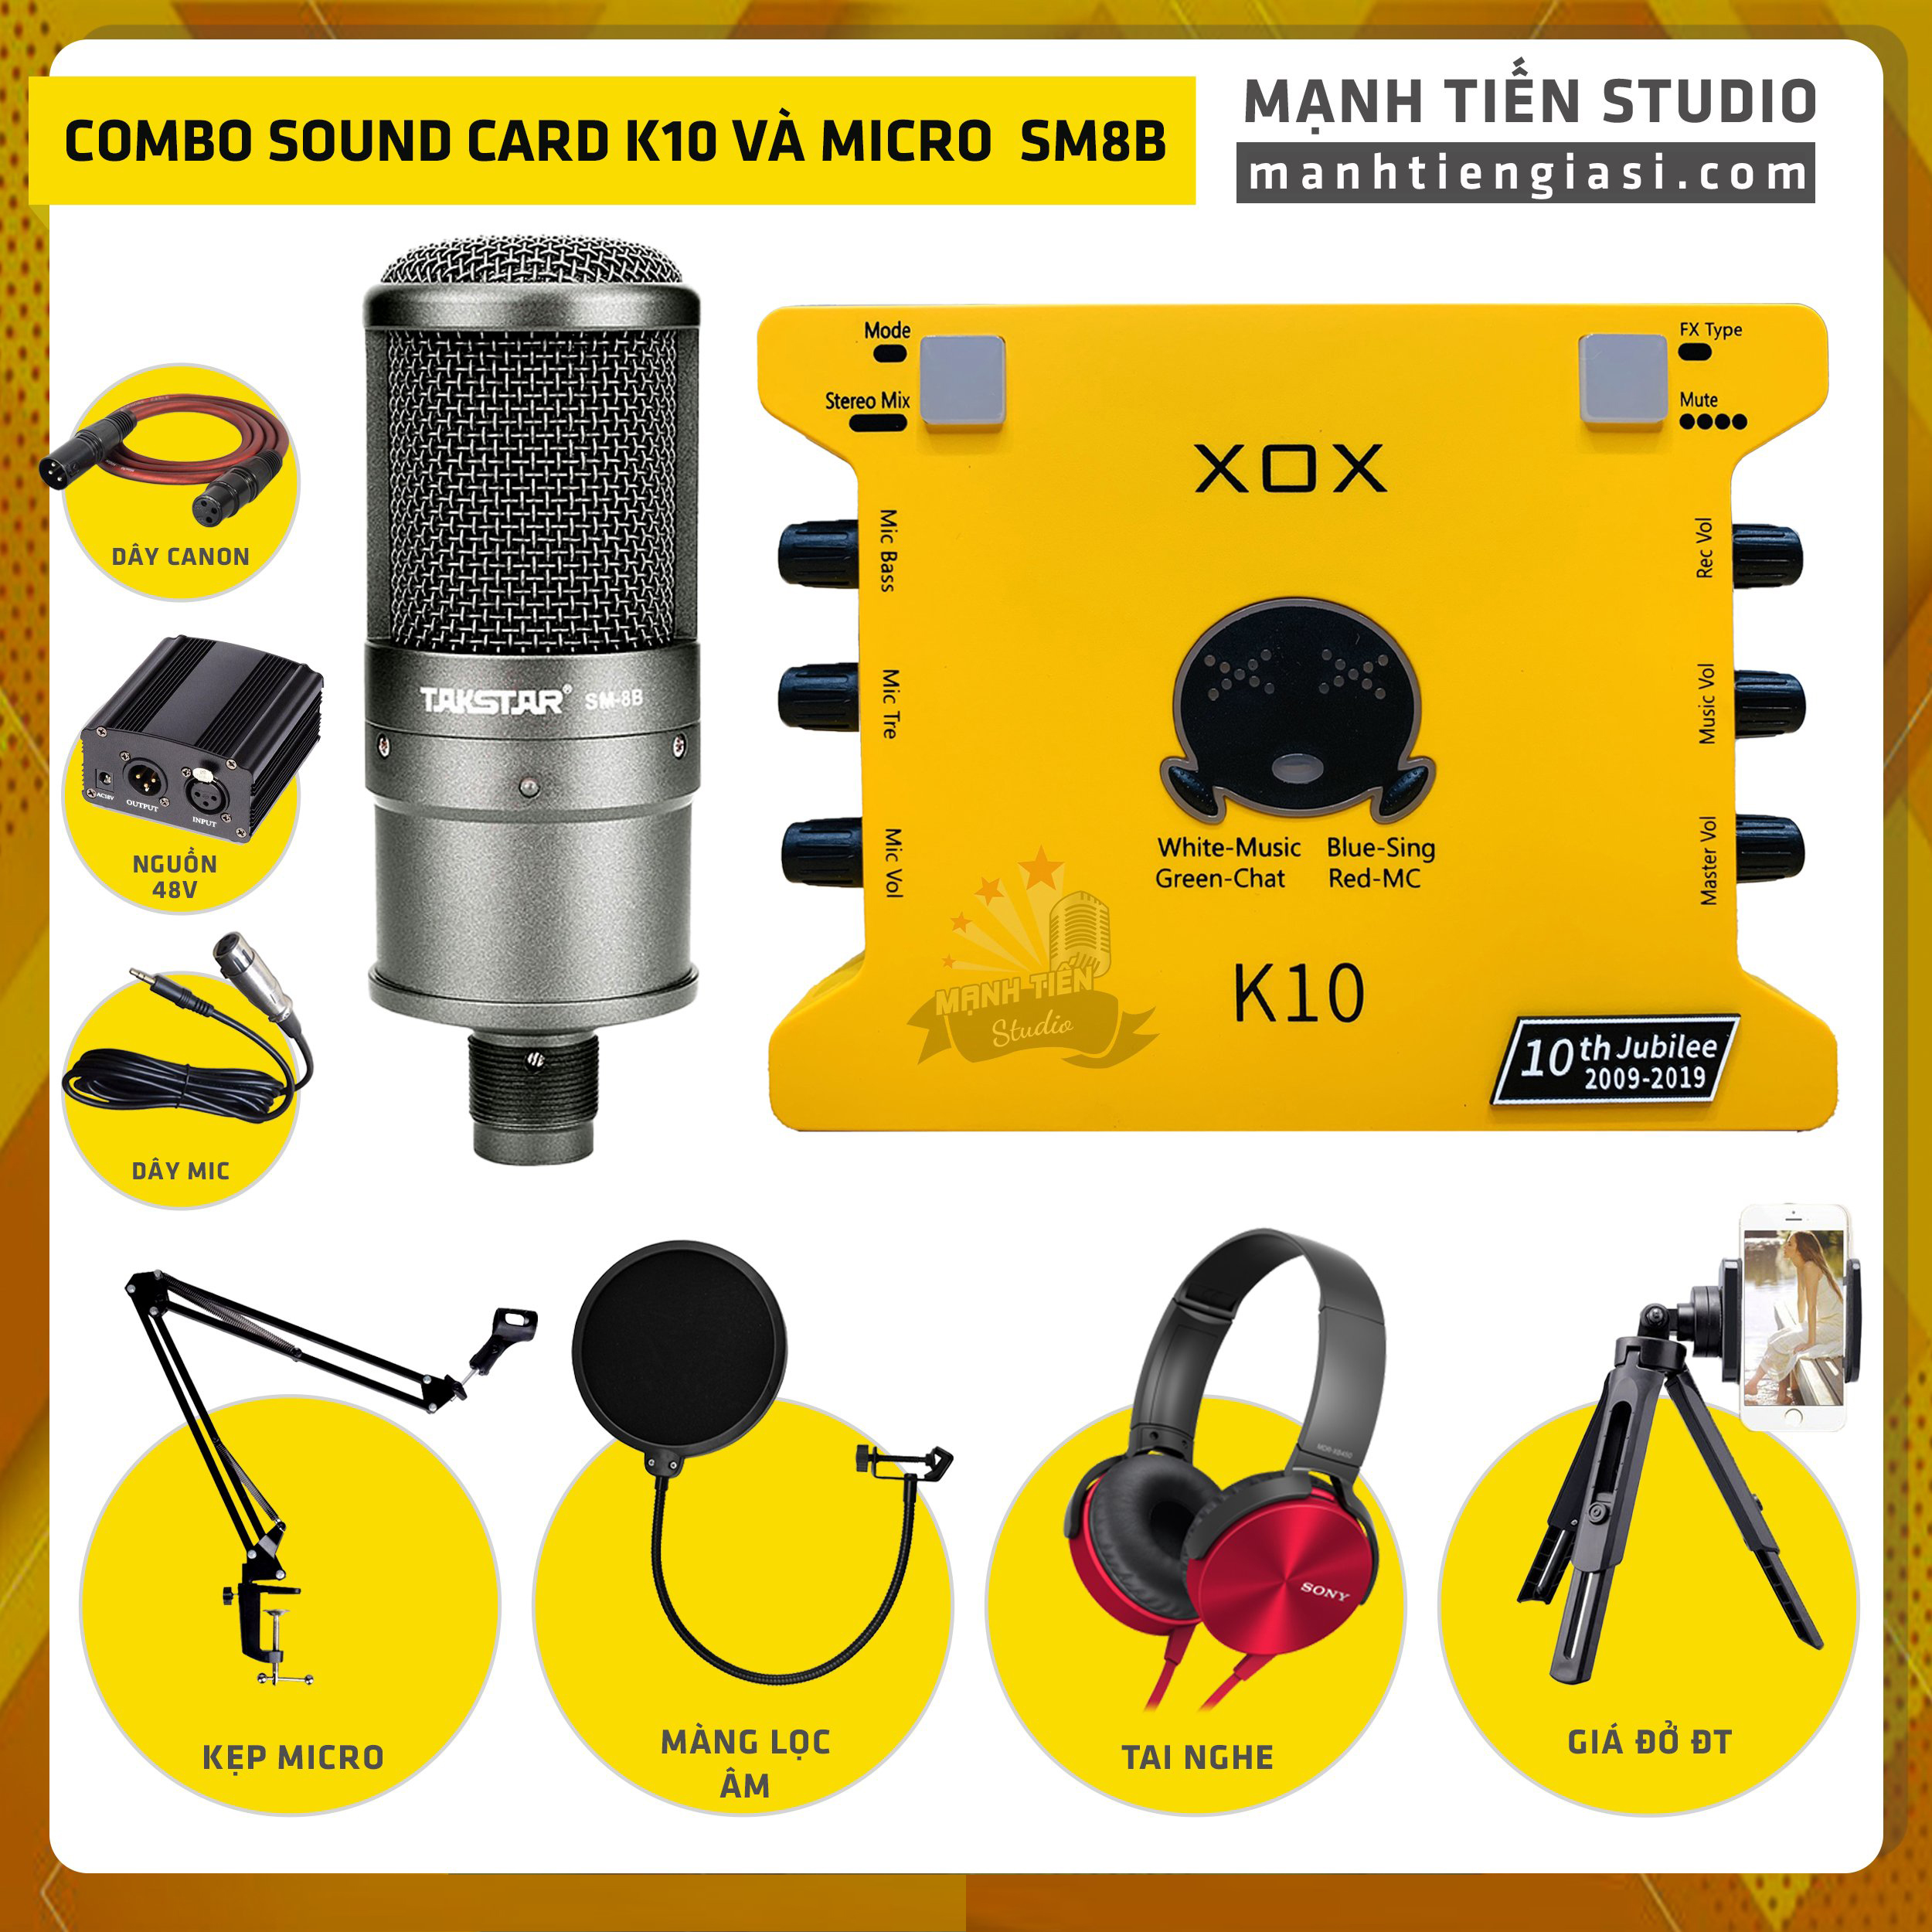 Combo thu âm, livestream Micro TakStar SM8B, Sound card XOX K10 Jubilee - Kèm full phụ kiện nguồn 48V, kẹp micro, màng lọc, tai nghe, giá đỡ ĐT - Hỗ trợ thu âm, karaoke online chuyên nghiệp - Hàng nhập khẩu